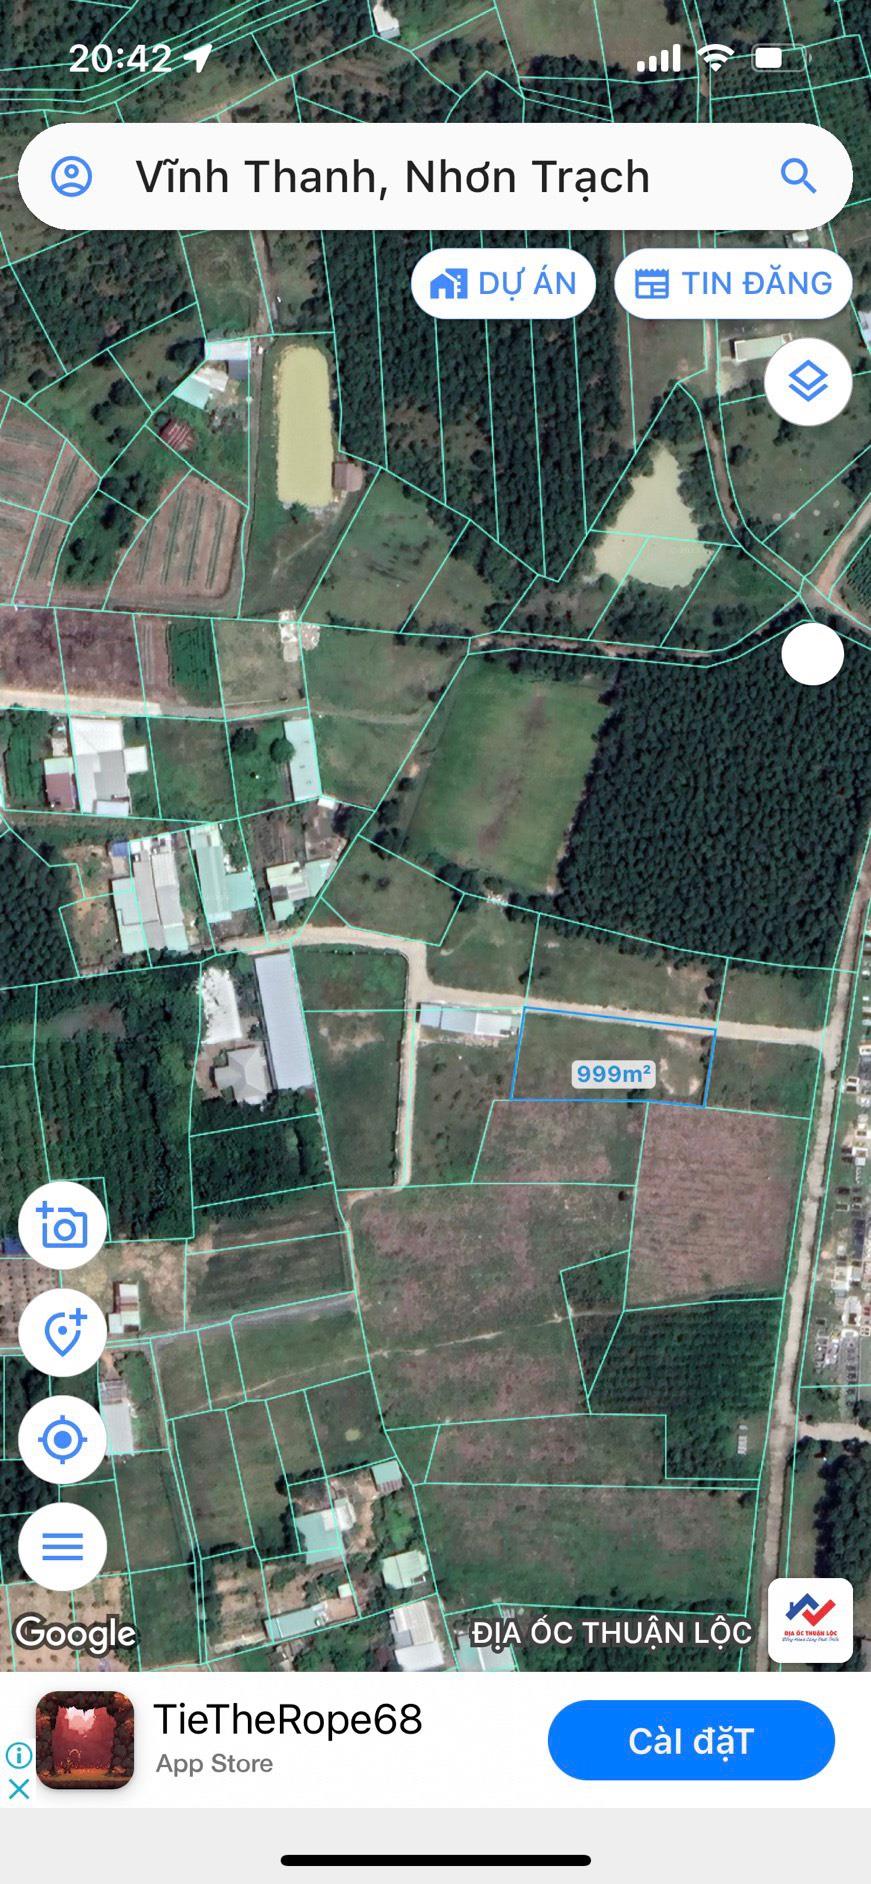 Bán lô đất 1002m2 Xã Vĩnh Thanh, Huyện Nhơn, Trạch Tỉnh Đồng Nai702035